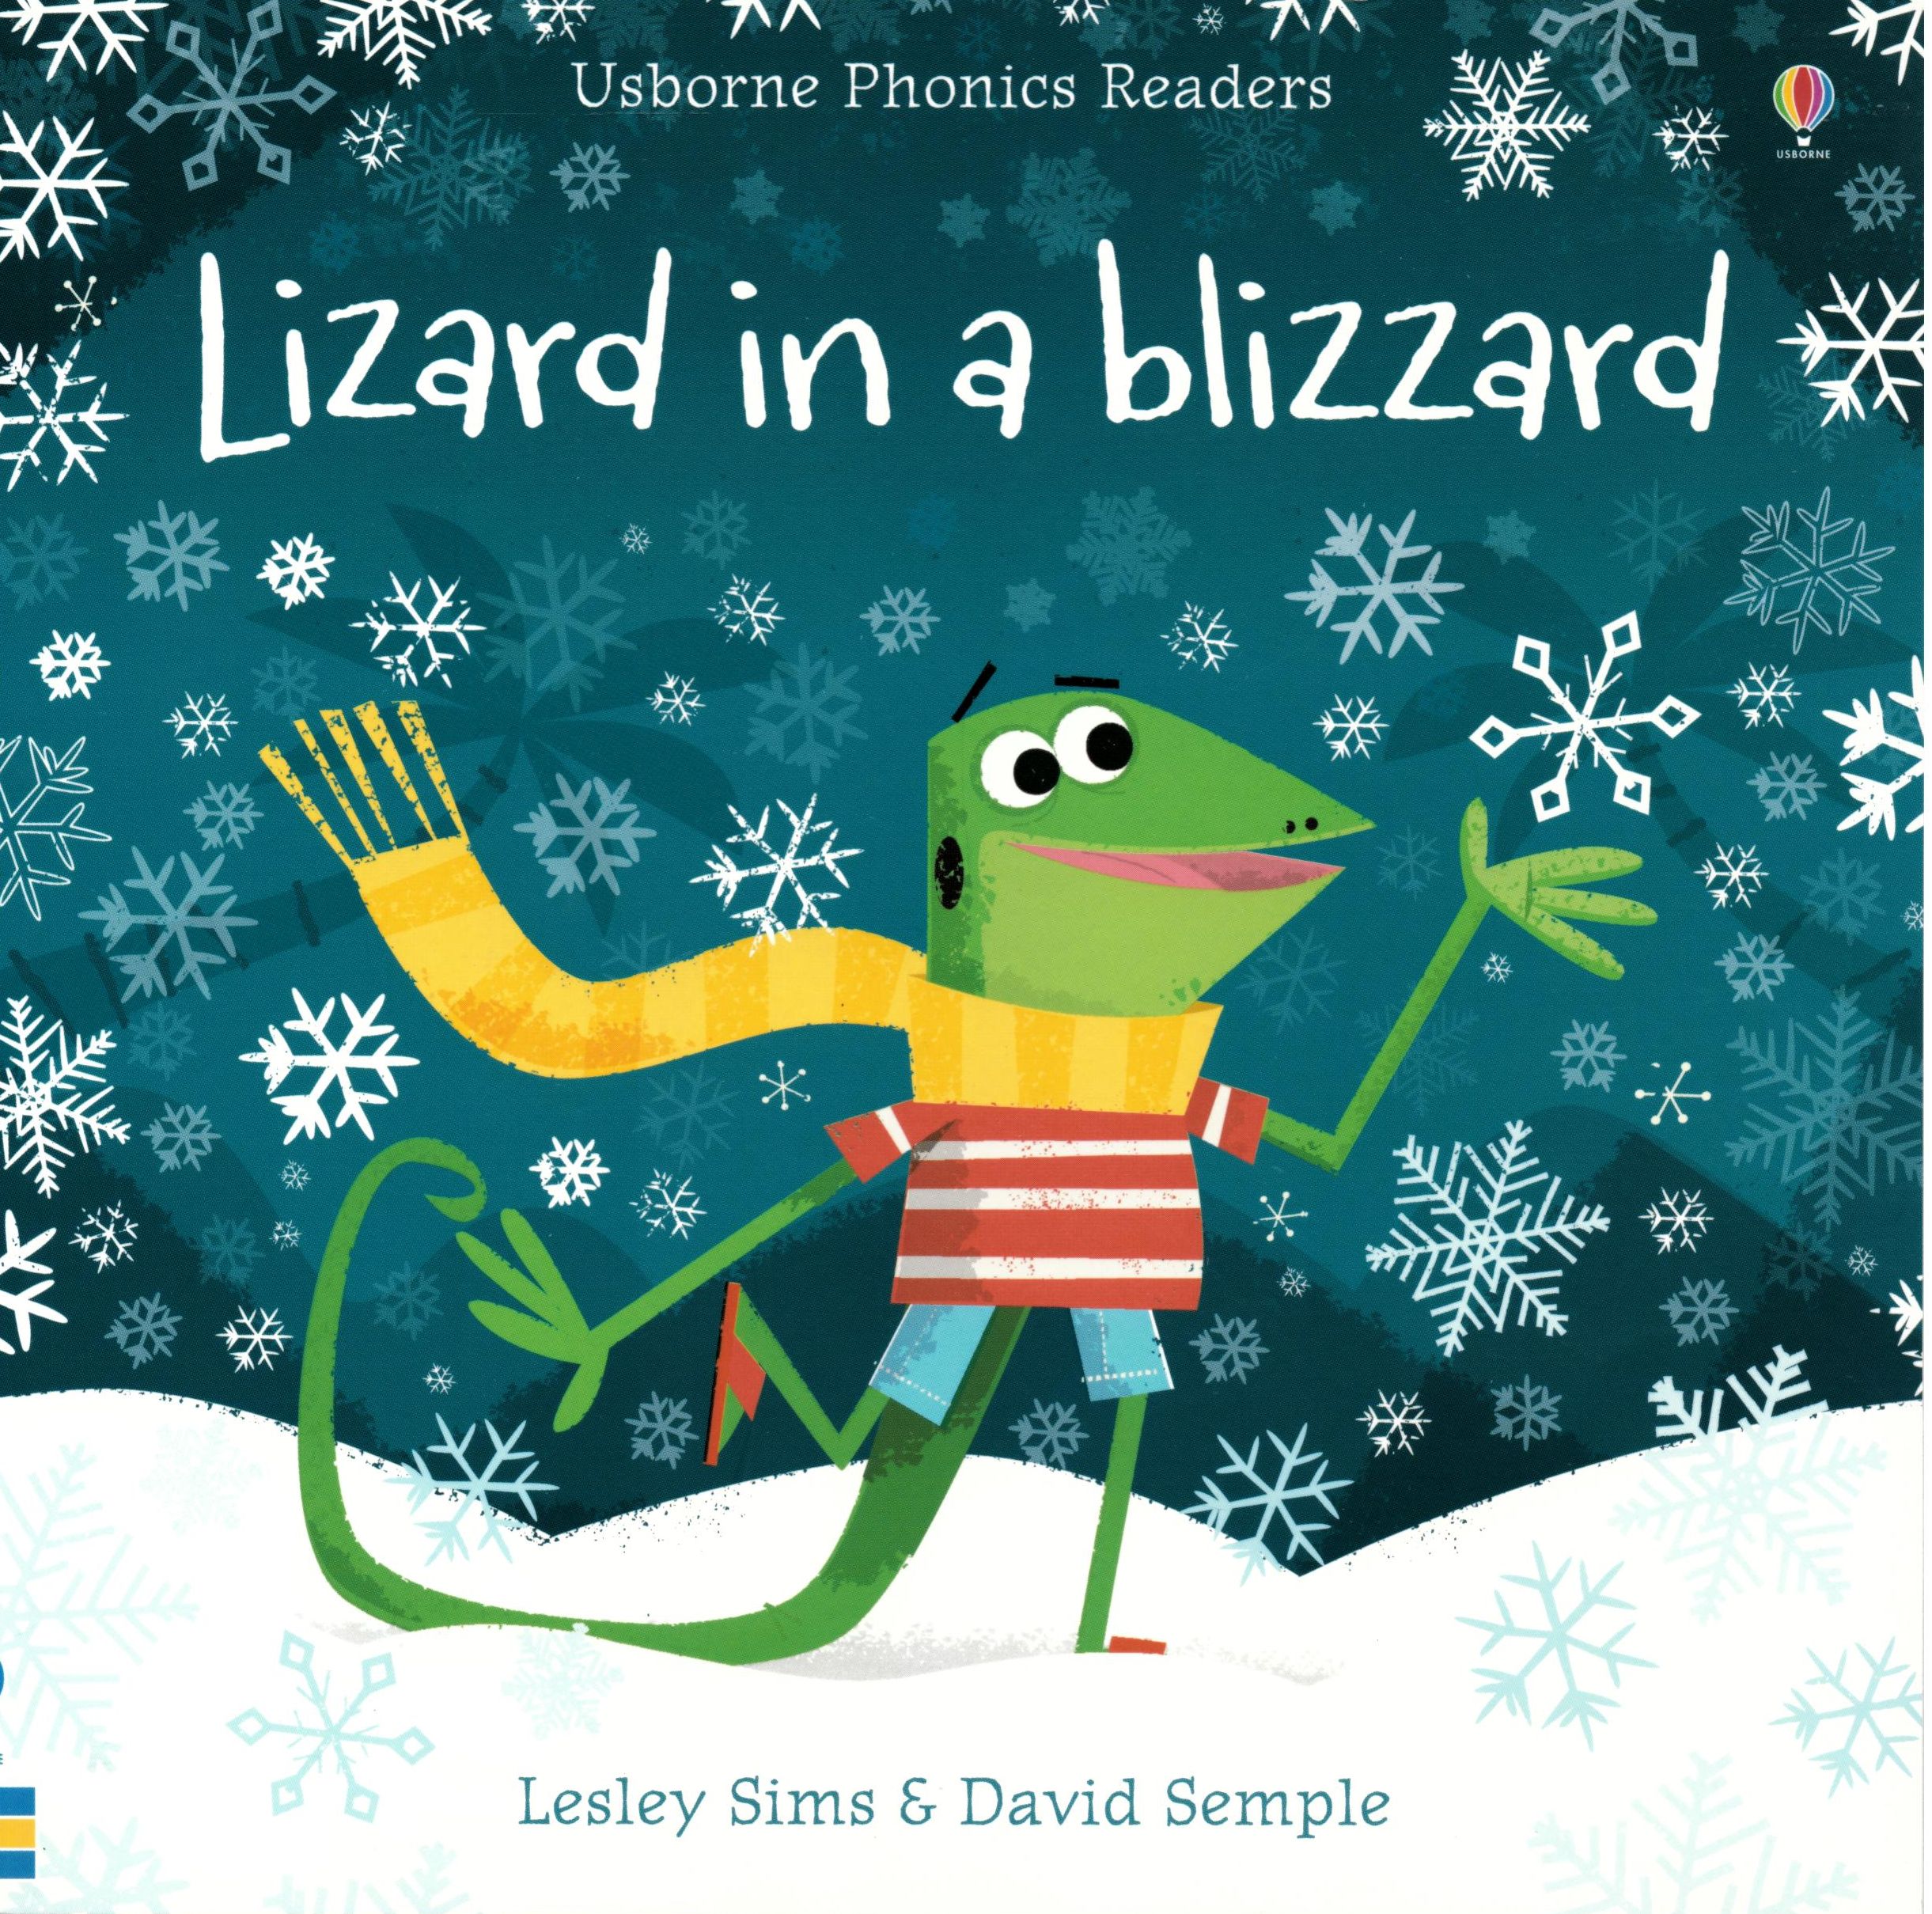 Εκδόσεις Usborne Publishing - Usborne Phonics Readers:Lizard in a blizzard